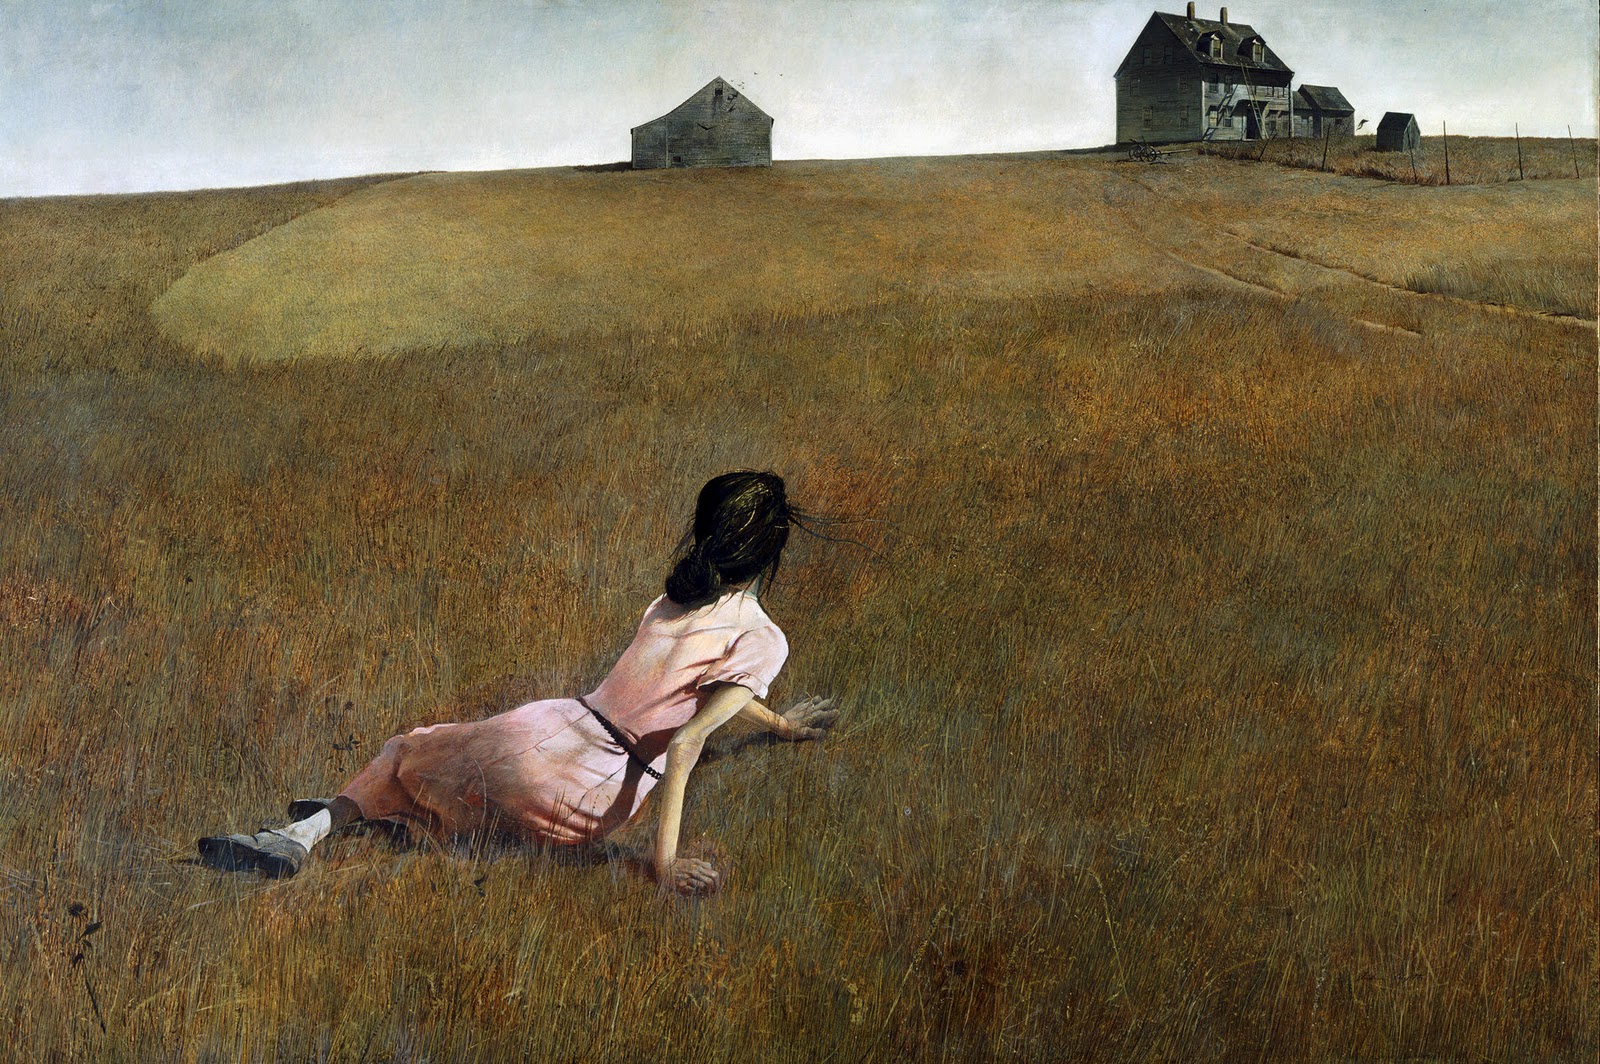 Andrew Wyeth, "Świat Krystyny", 1948